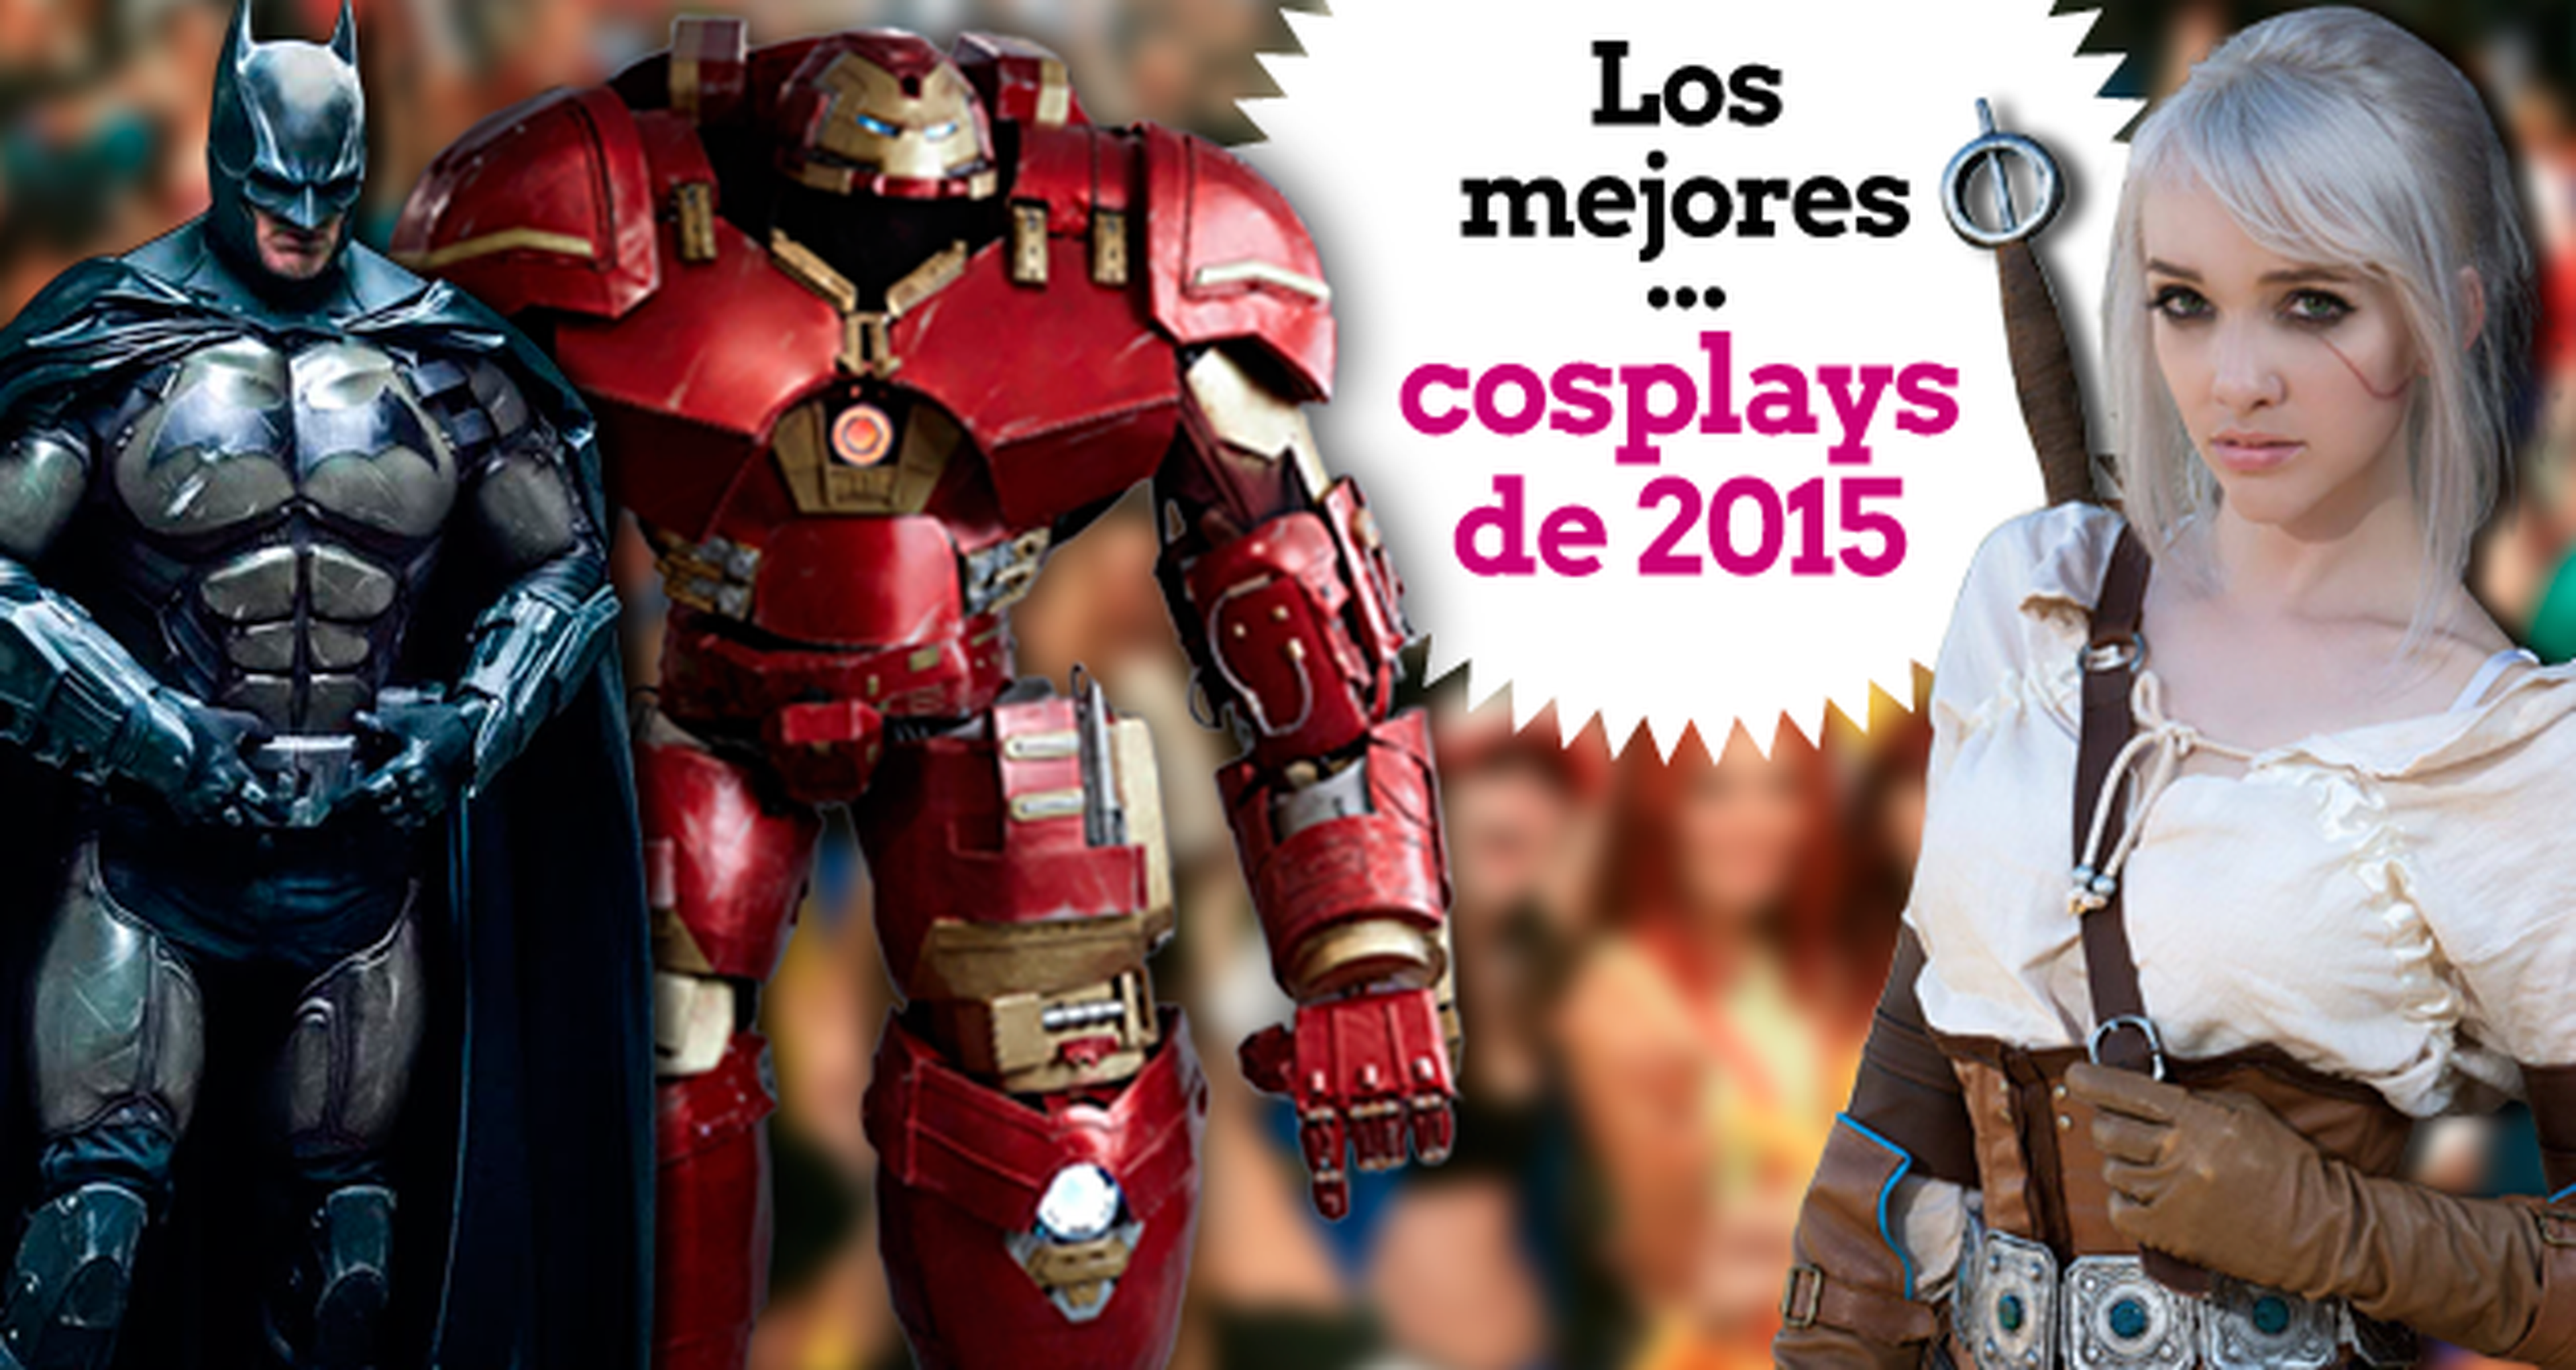 Los mejores cosplay de 2015